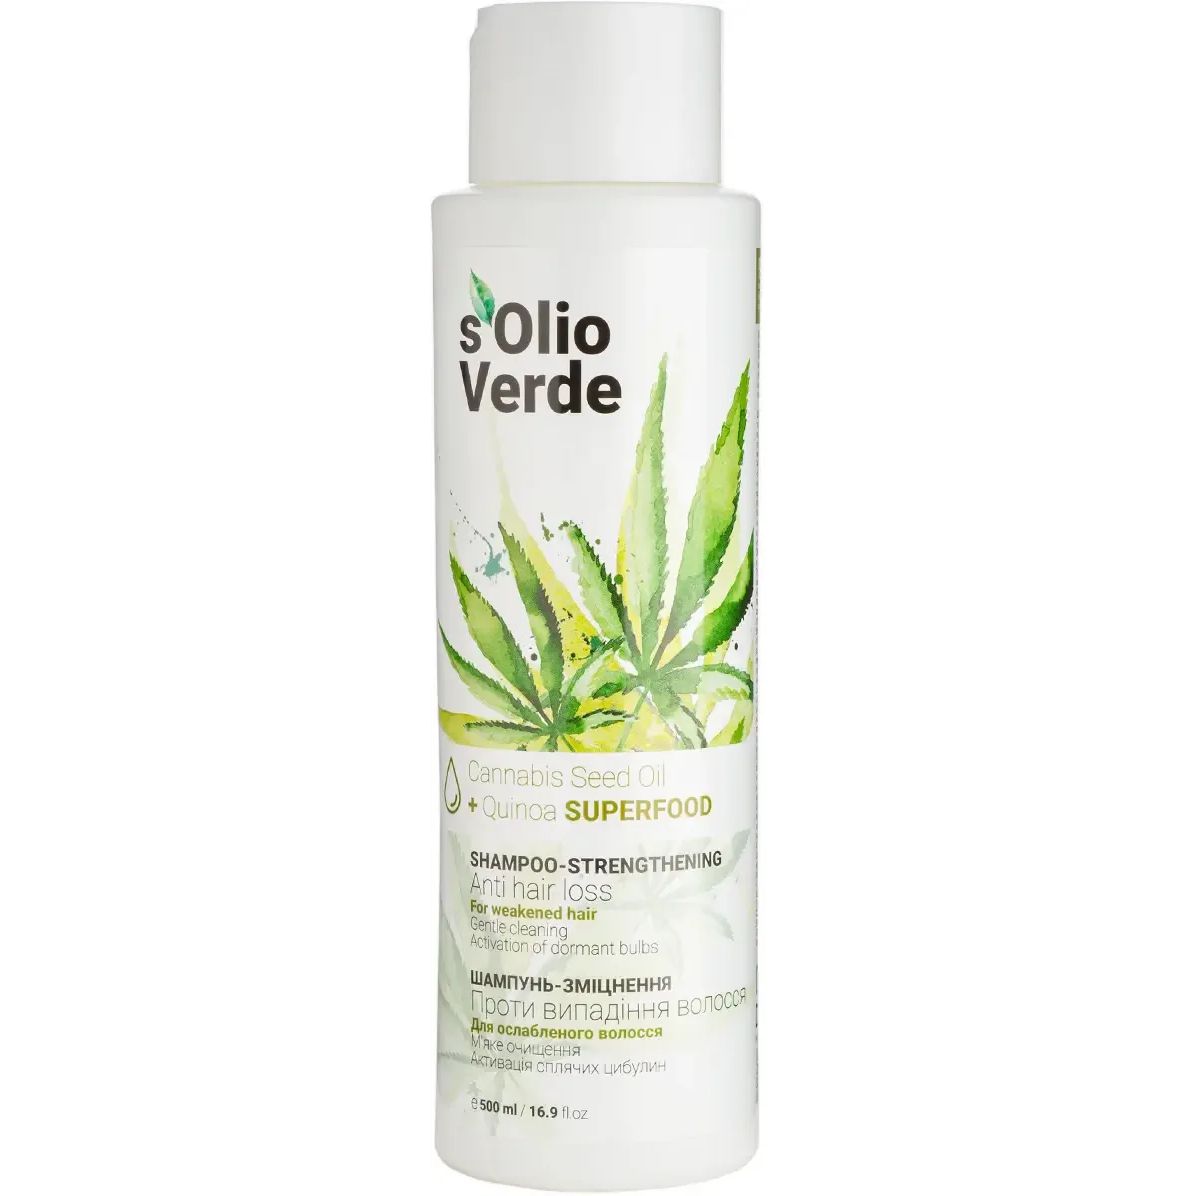 Шампунь-укрепление S'olio Verde Cannabis Seed Oil против выпадения волос 500 мл - фото 1